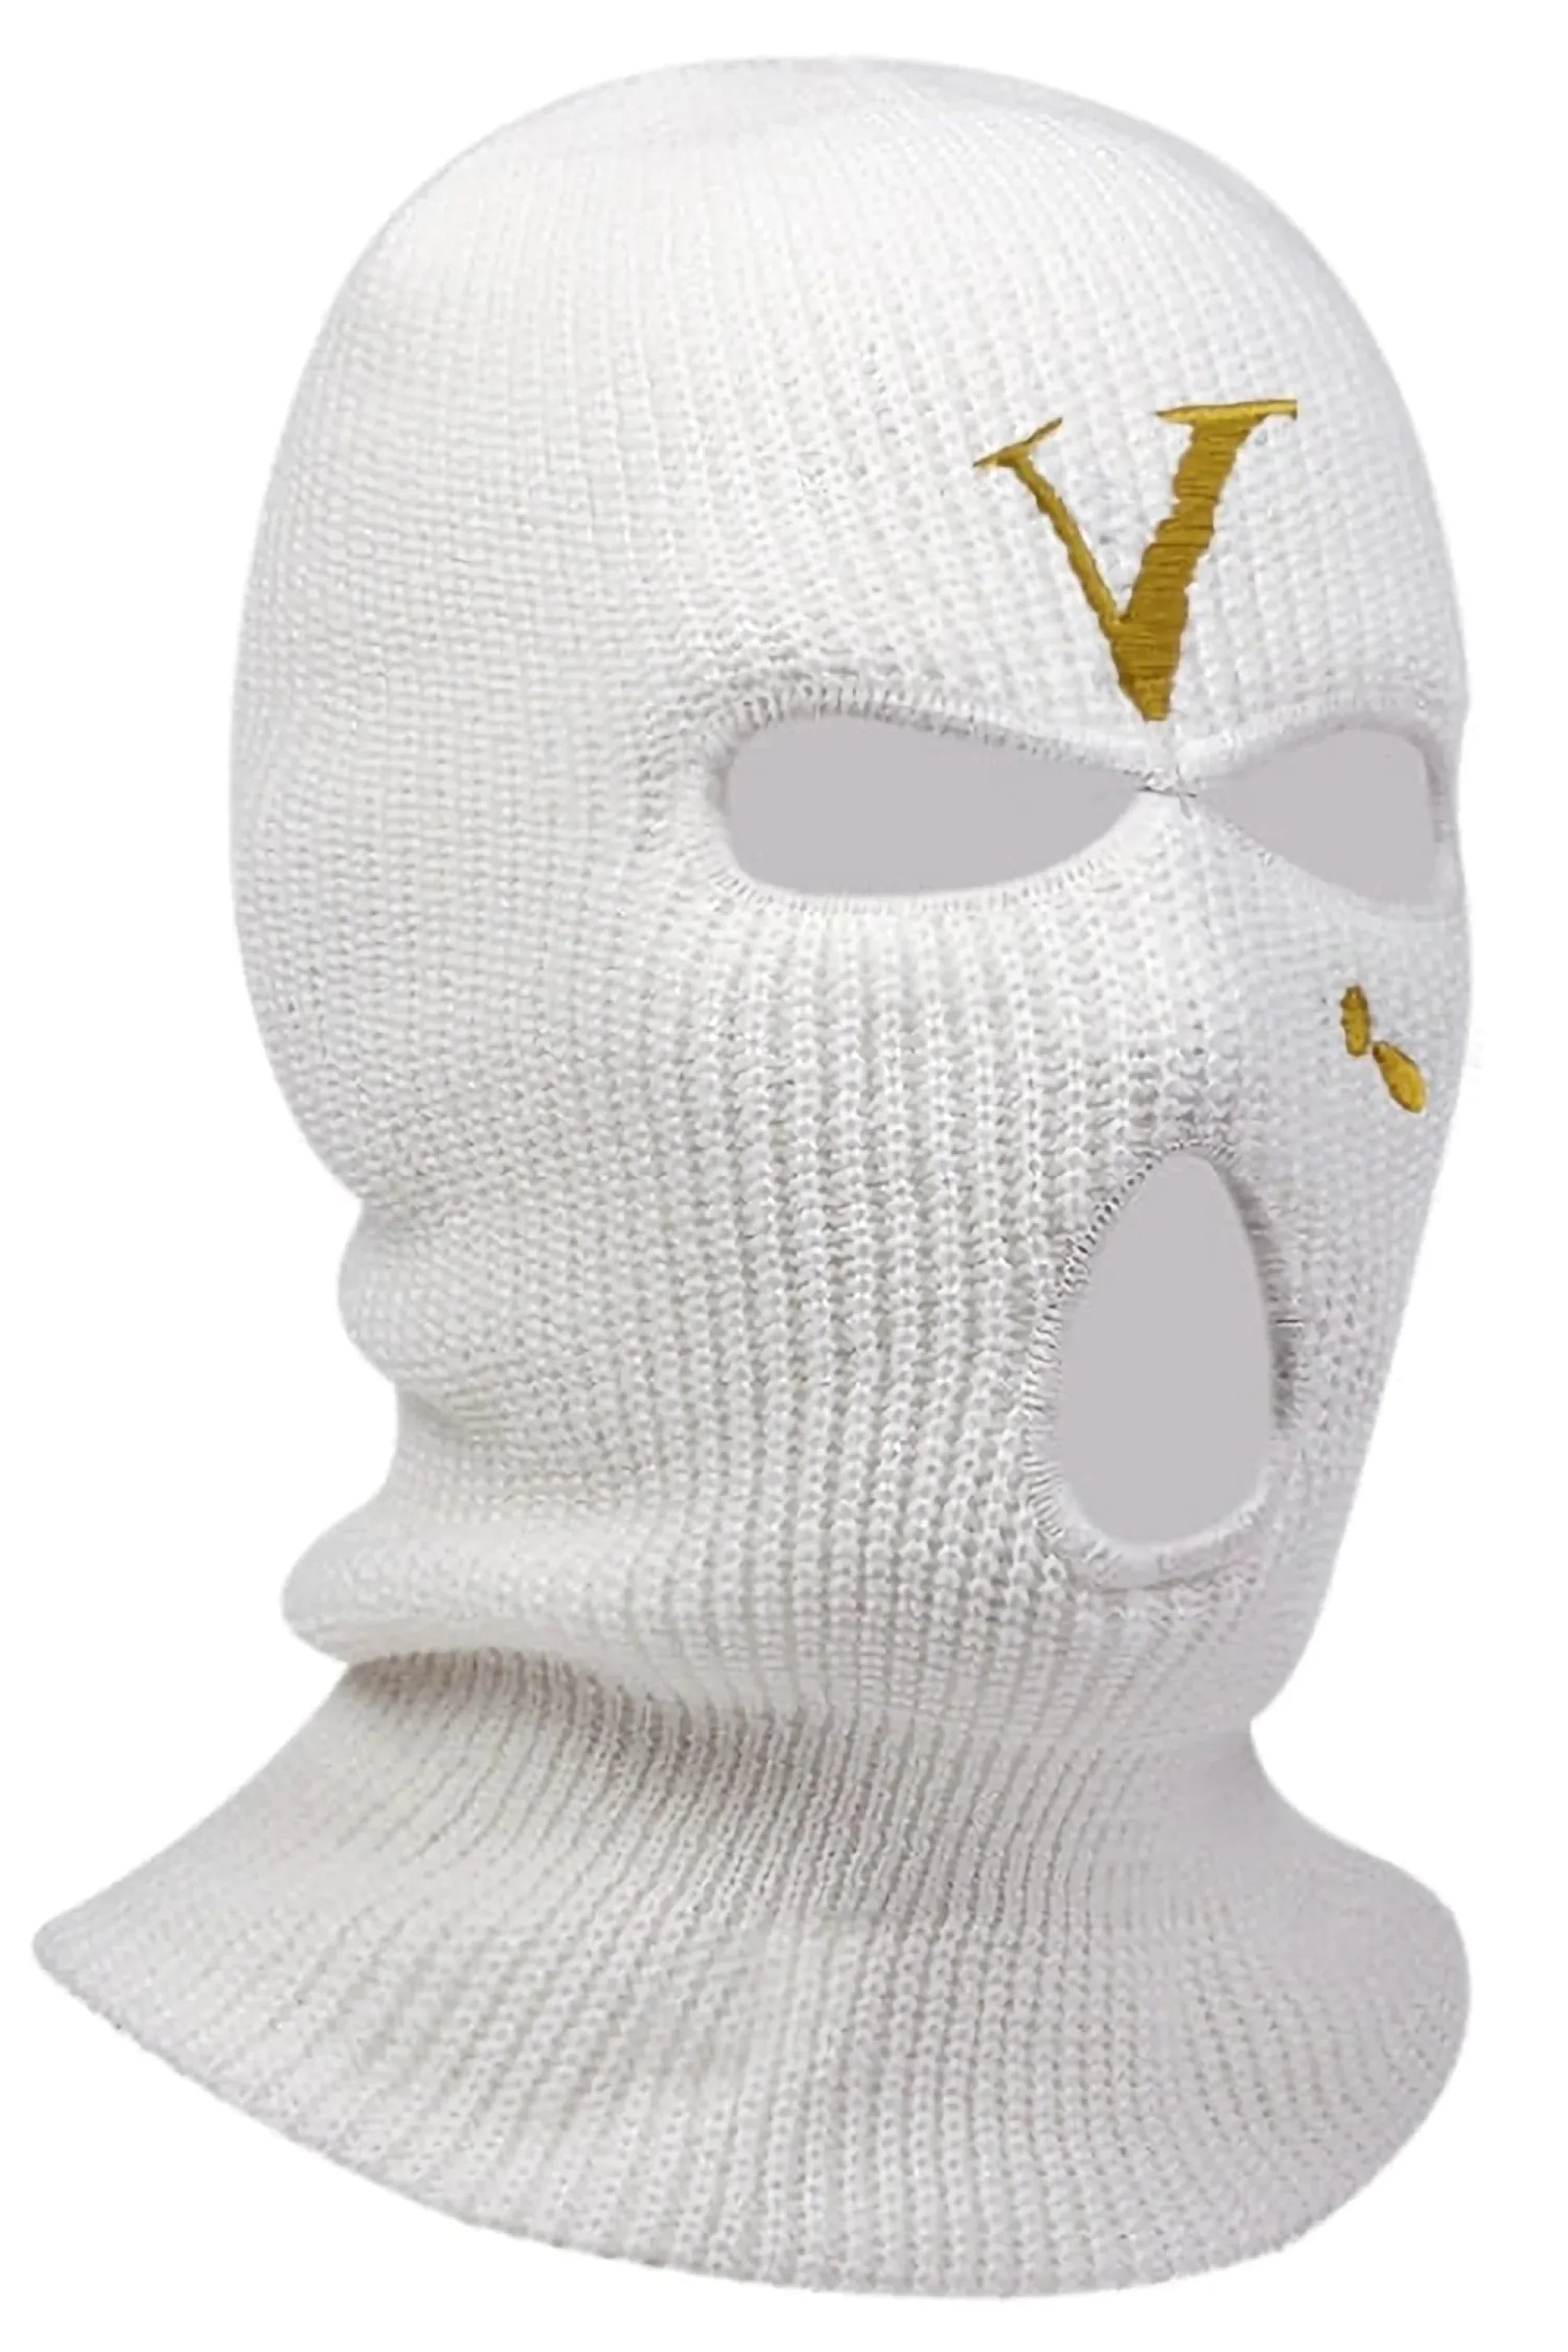 IRHAZ Rose Vlone Embroidery 3 Holes Ski Mask